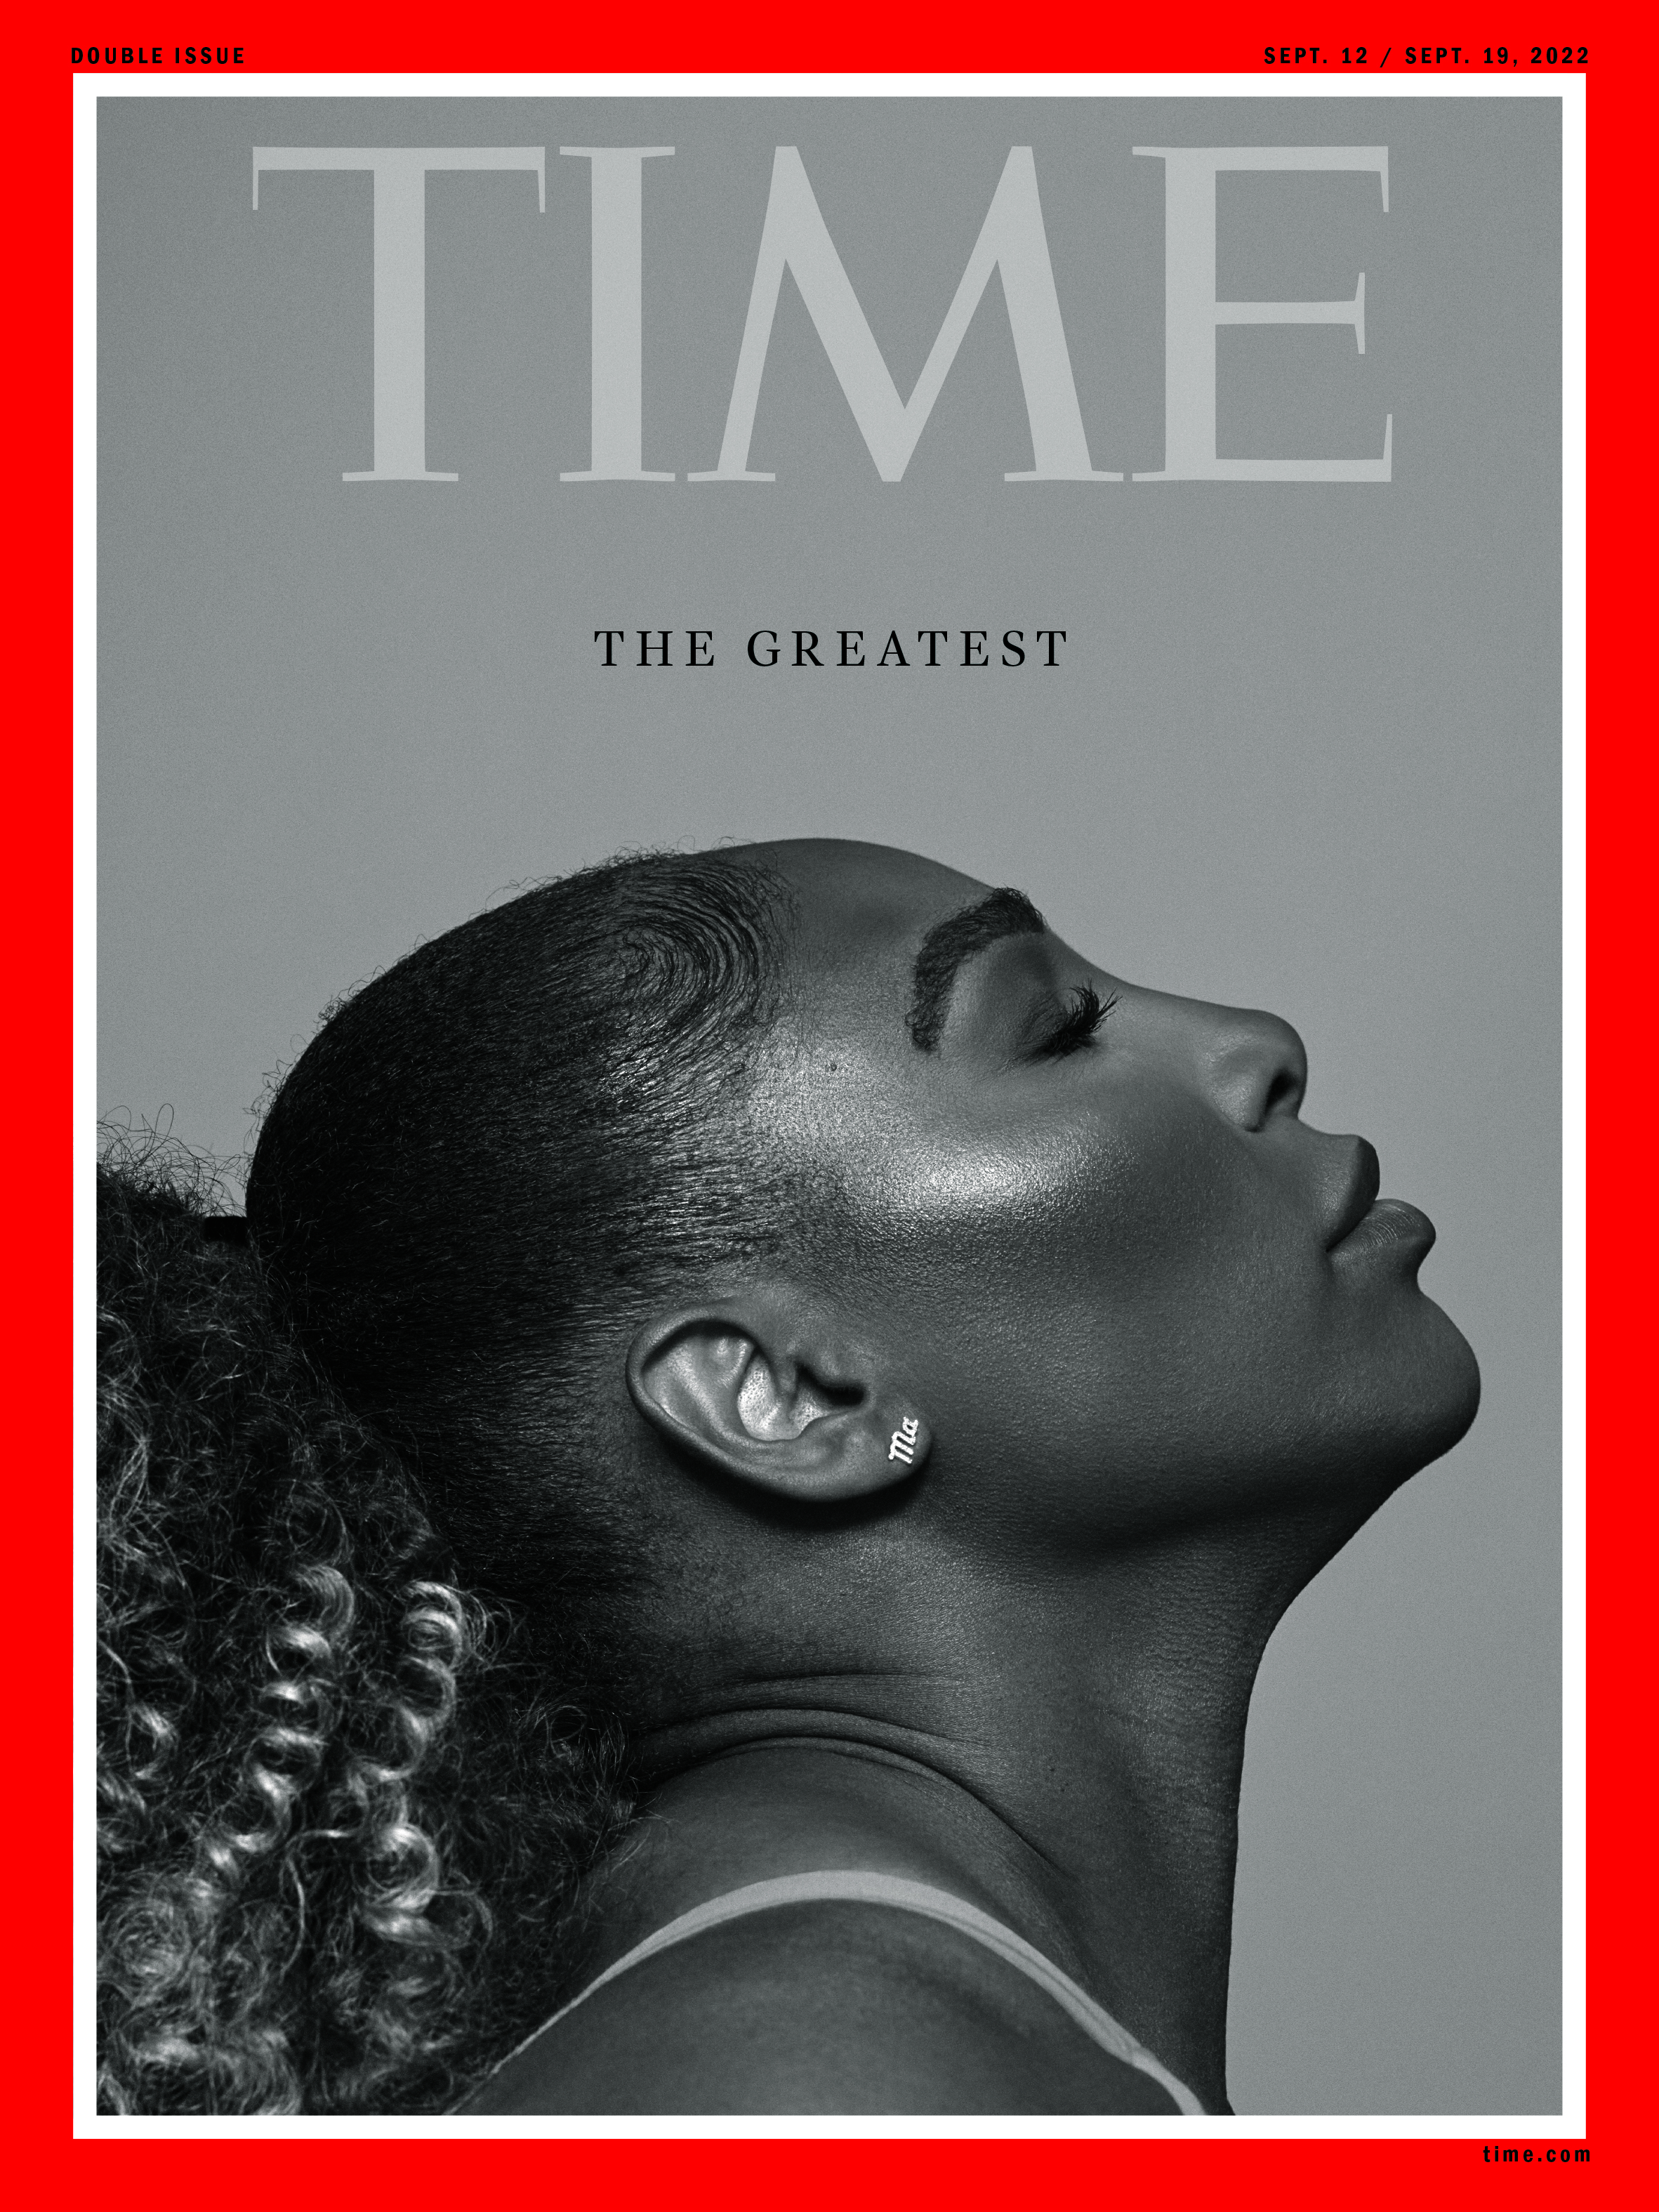 TIME - “The Greatest” September 12/September 19, 2022